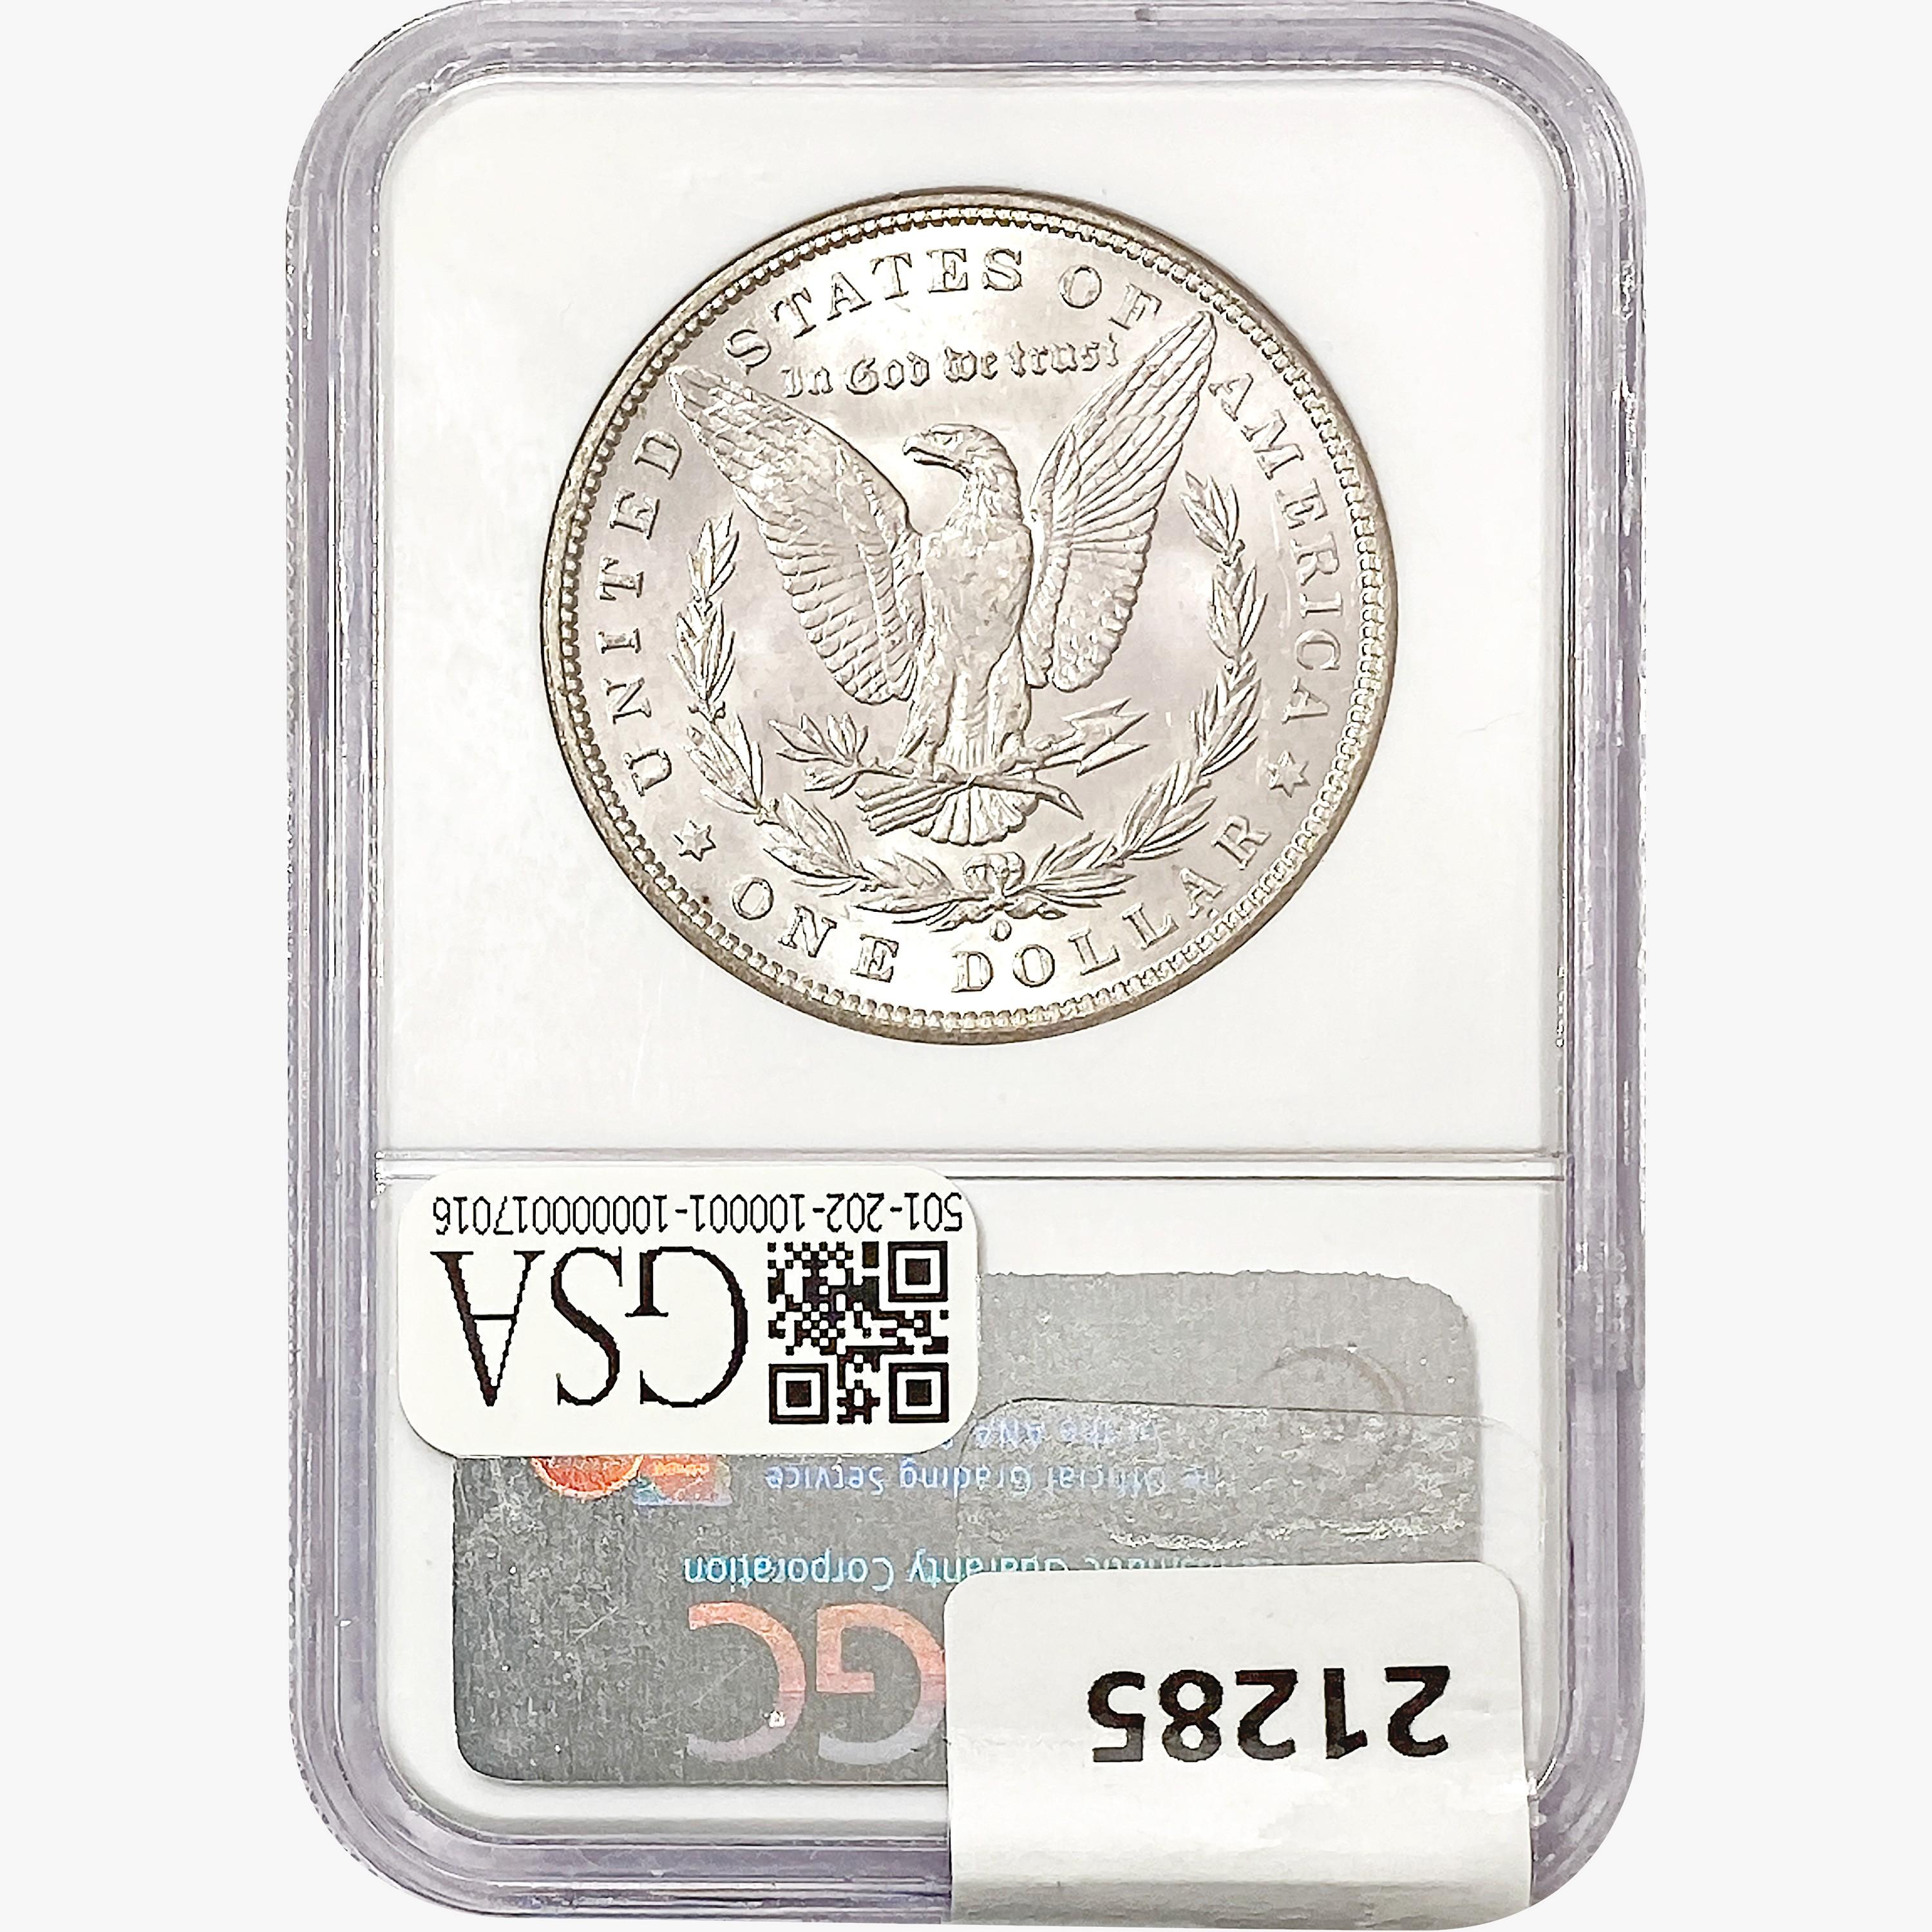 1887-O Morgan Silver Dollar NGC BU